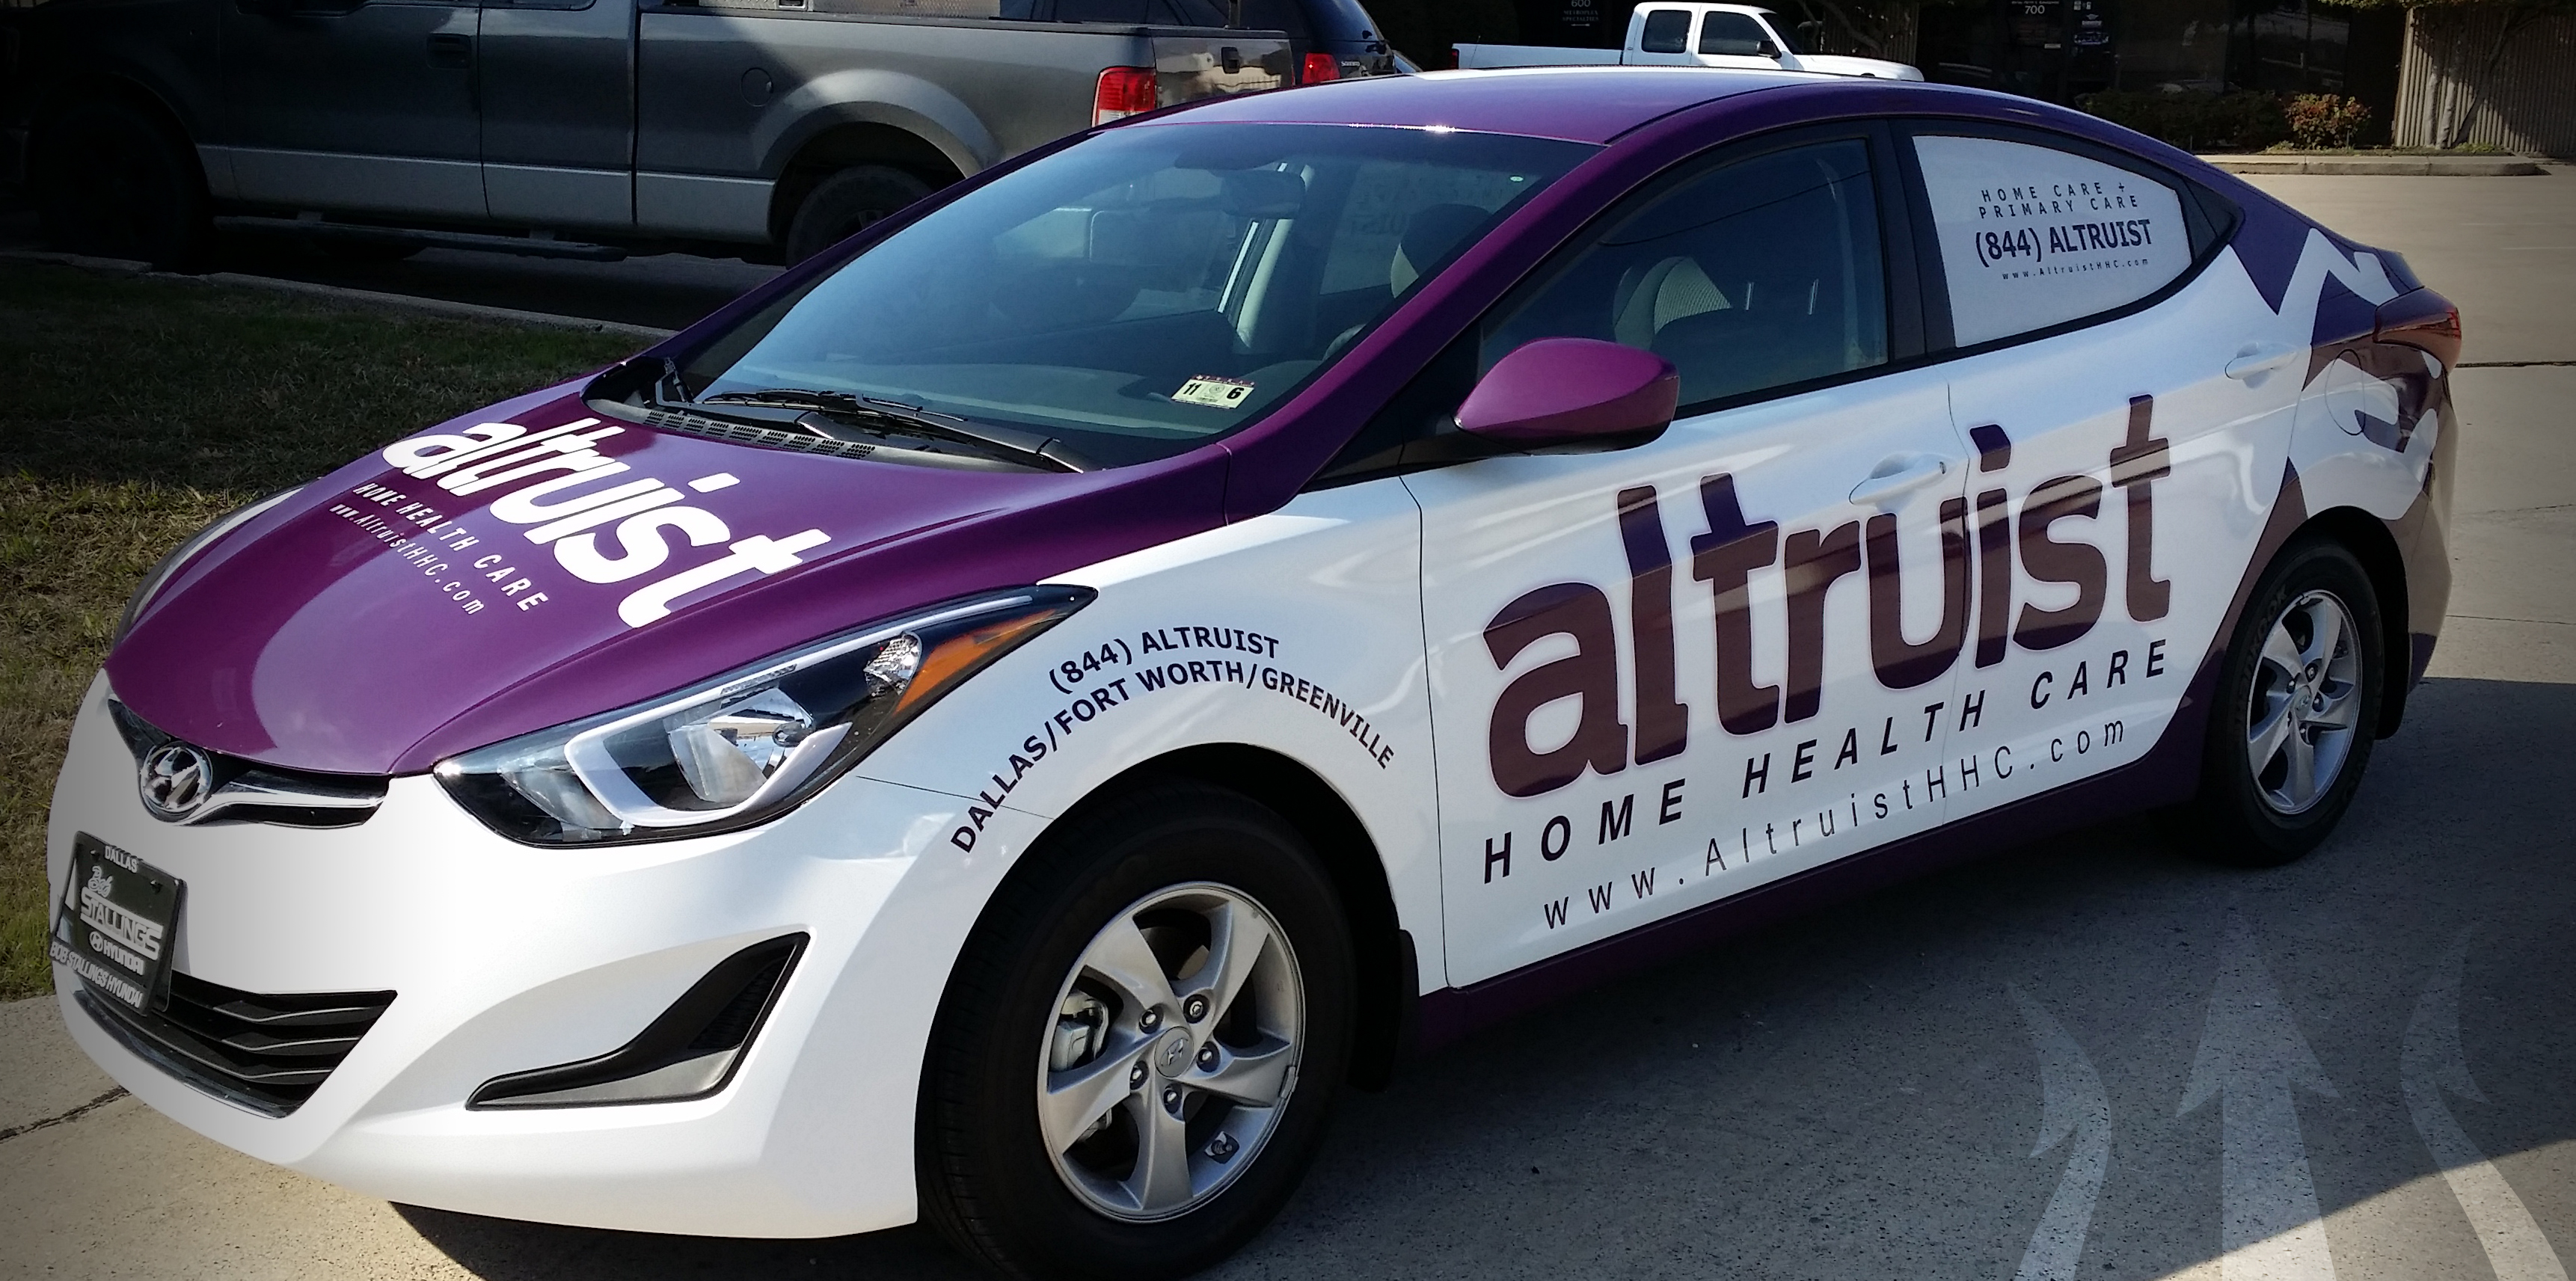 Altrust Car Wraps in Dallas, TX, DFW, Carrollton, TX, Plano, TX, Frisco, TX, and Surrounding Areas